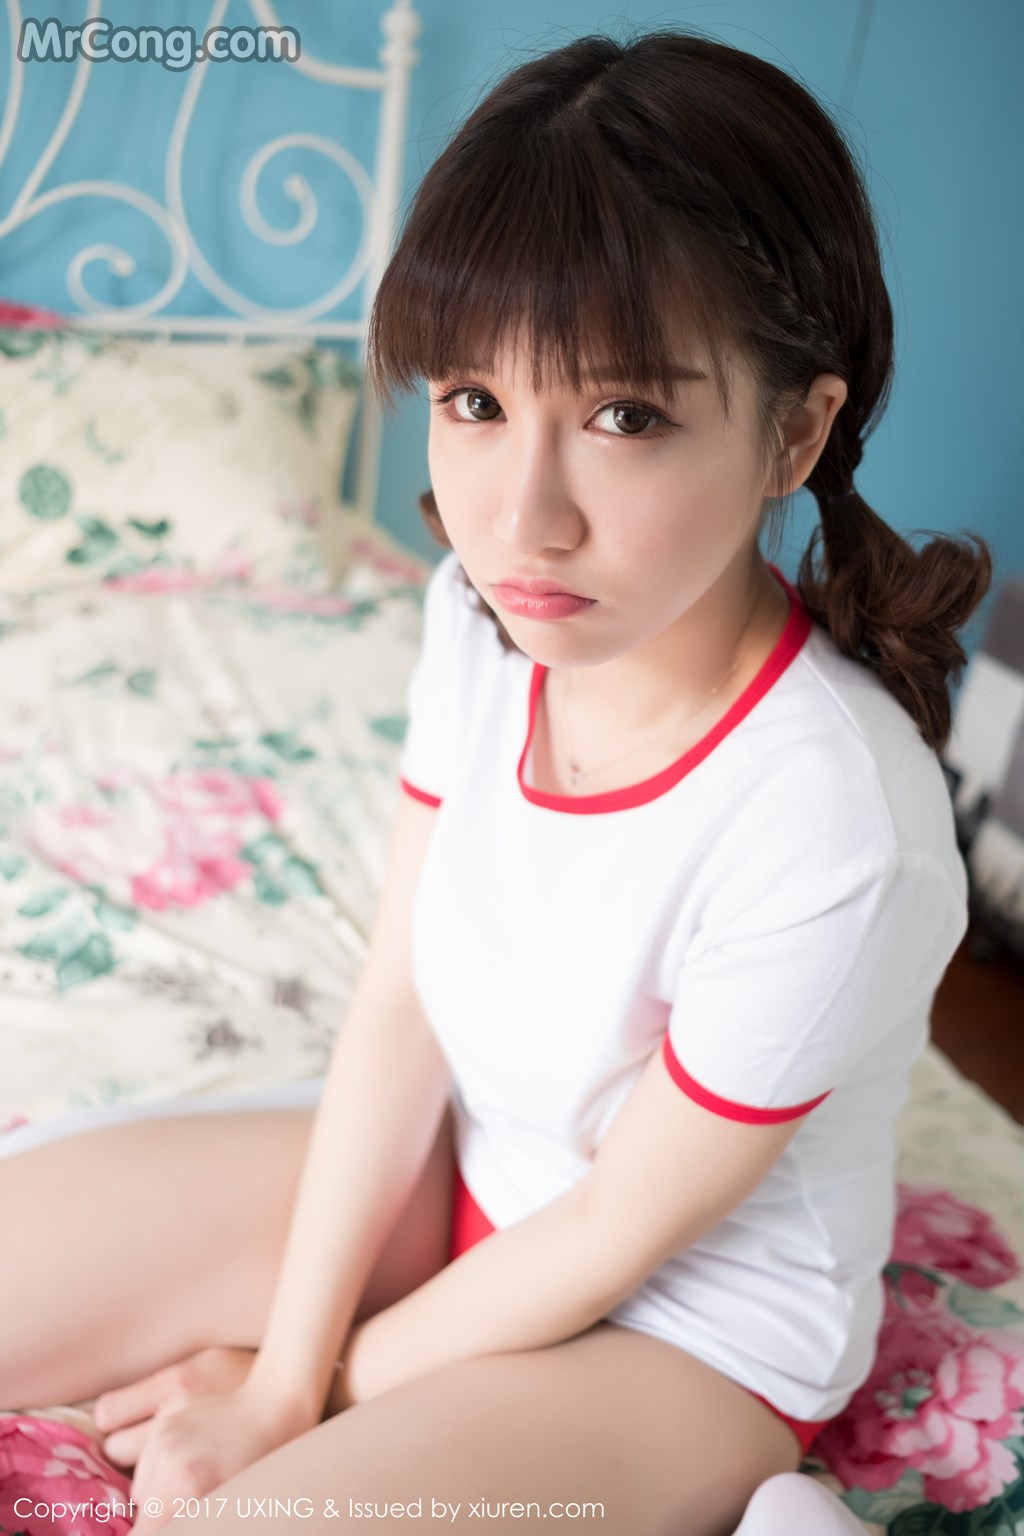 UXING Vol.040: Model Aojiao Meng Meng (K8 傲 娇 萌萌 Vivian) (61 photos) photo 1-7